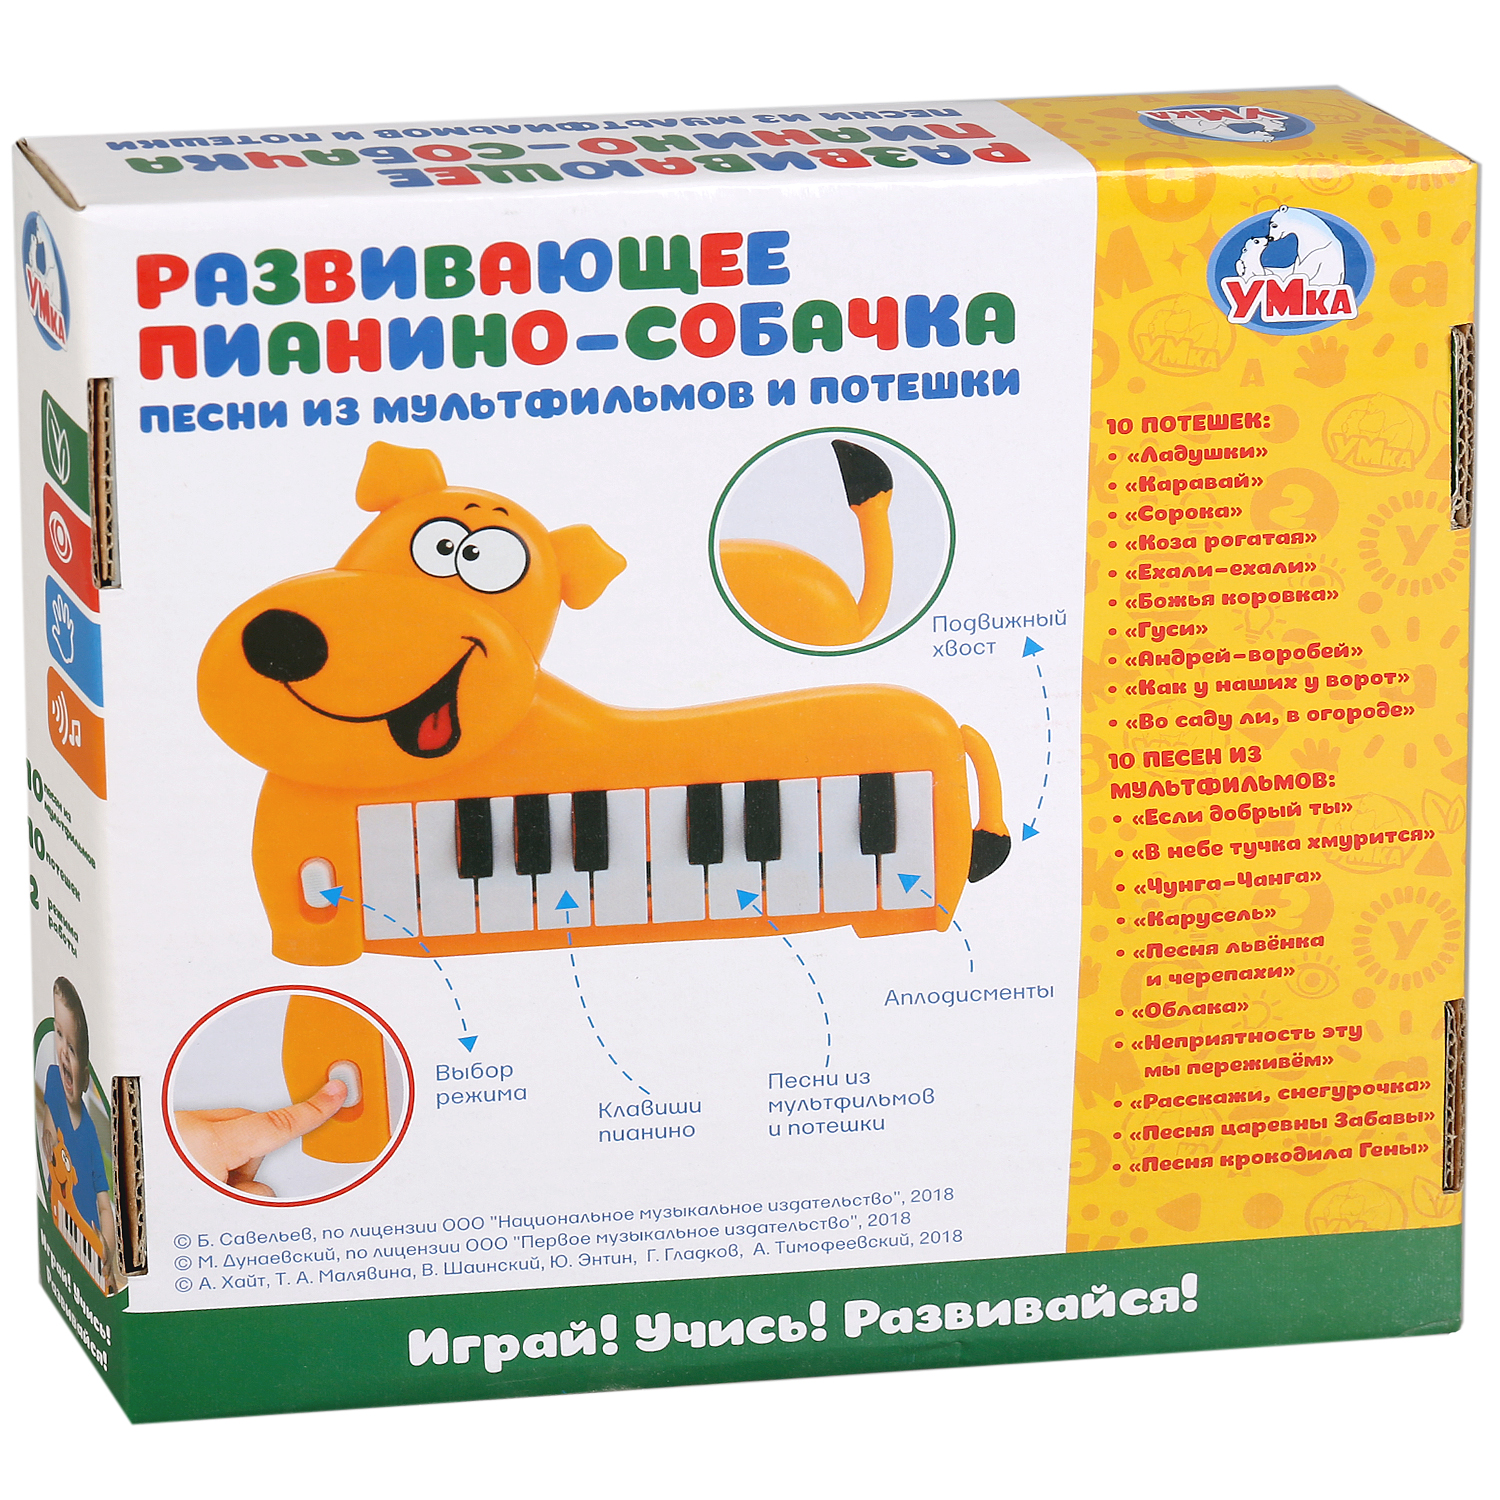 Музыкальная игрушка Умка Пианино-собачка 20 потешек и любимых песен на батарейках 267262 - фото 5